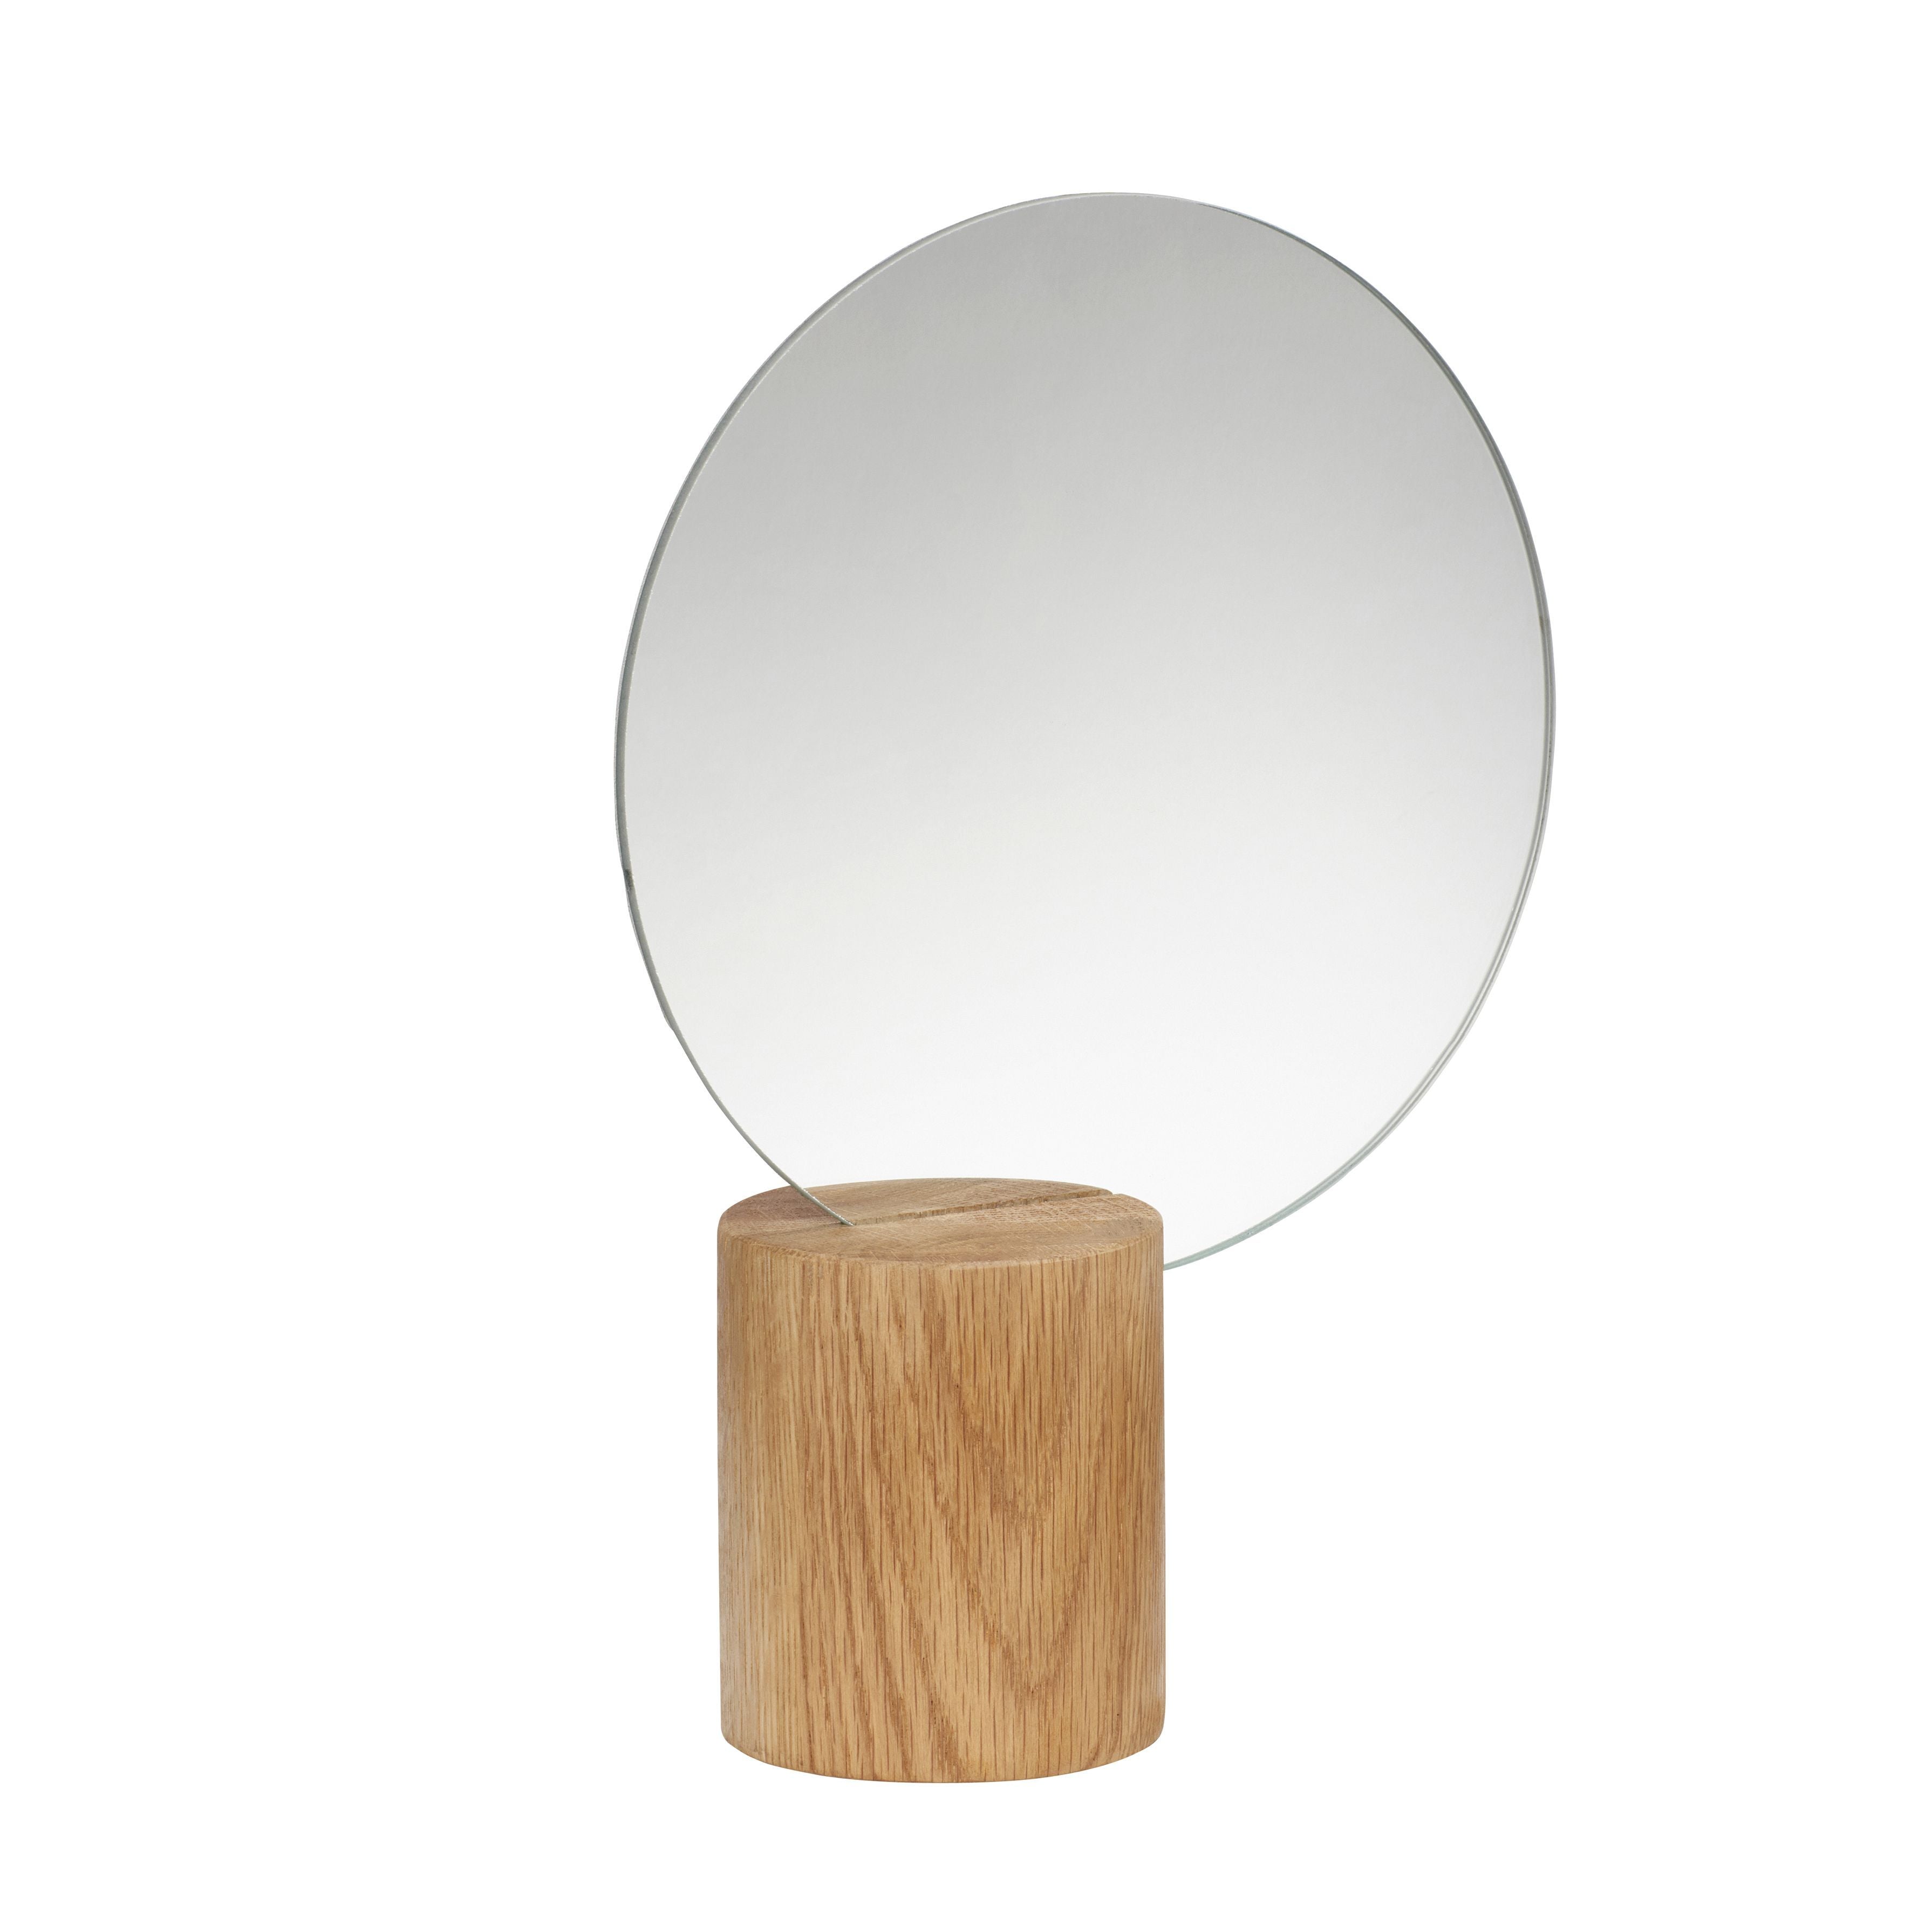 Hübsch Edge Table Mirror Wood Natural Round